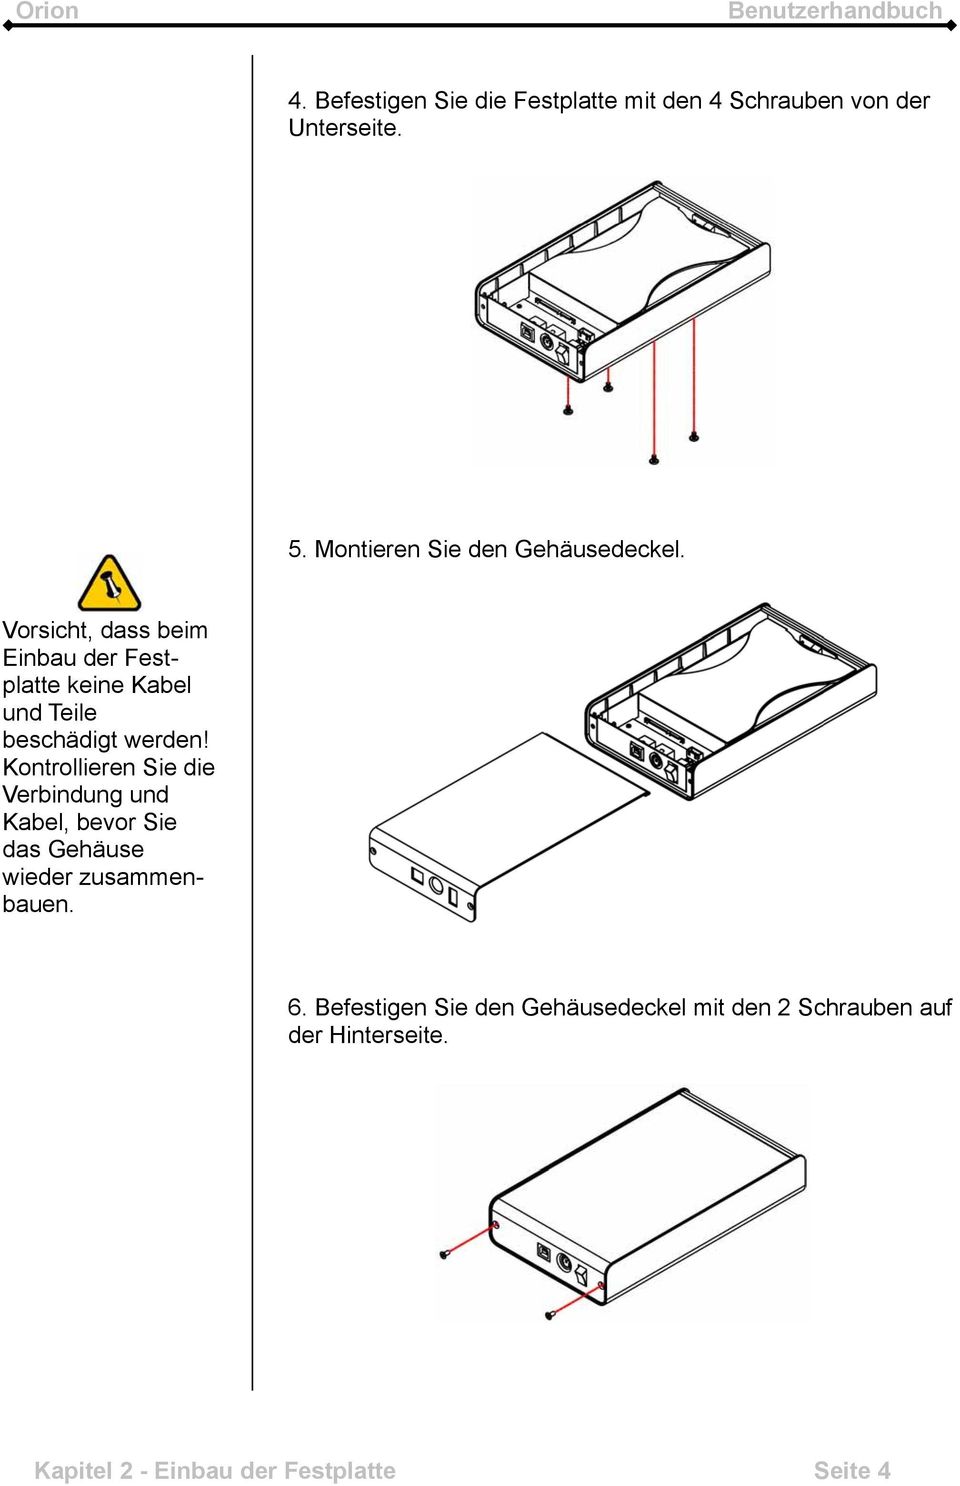 Vorsicht, dass beim Einbau der Festplatte keine Kabel und Teile beschädigt werden!